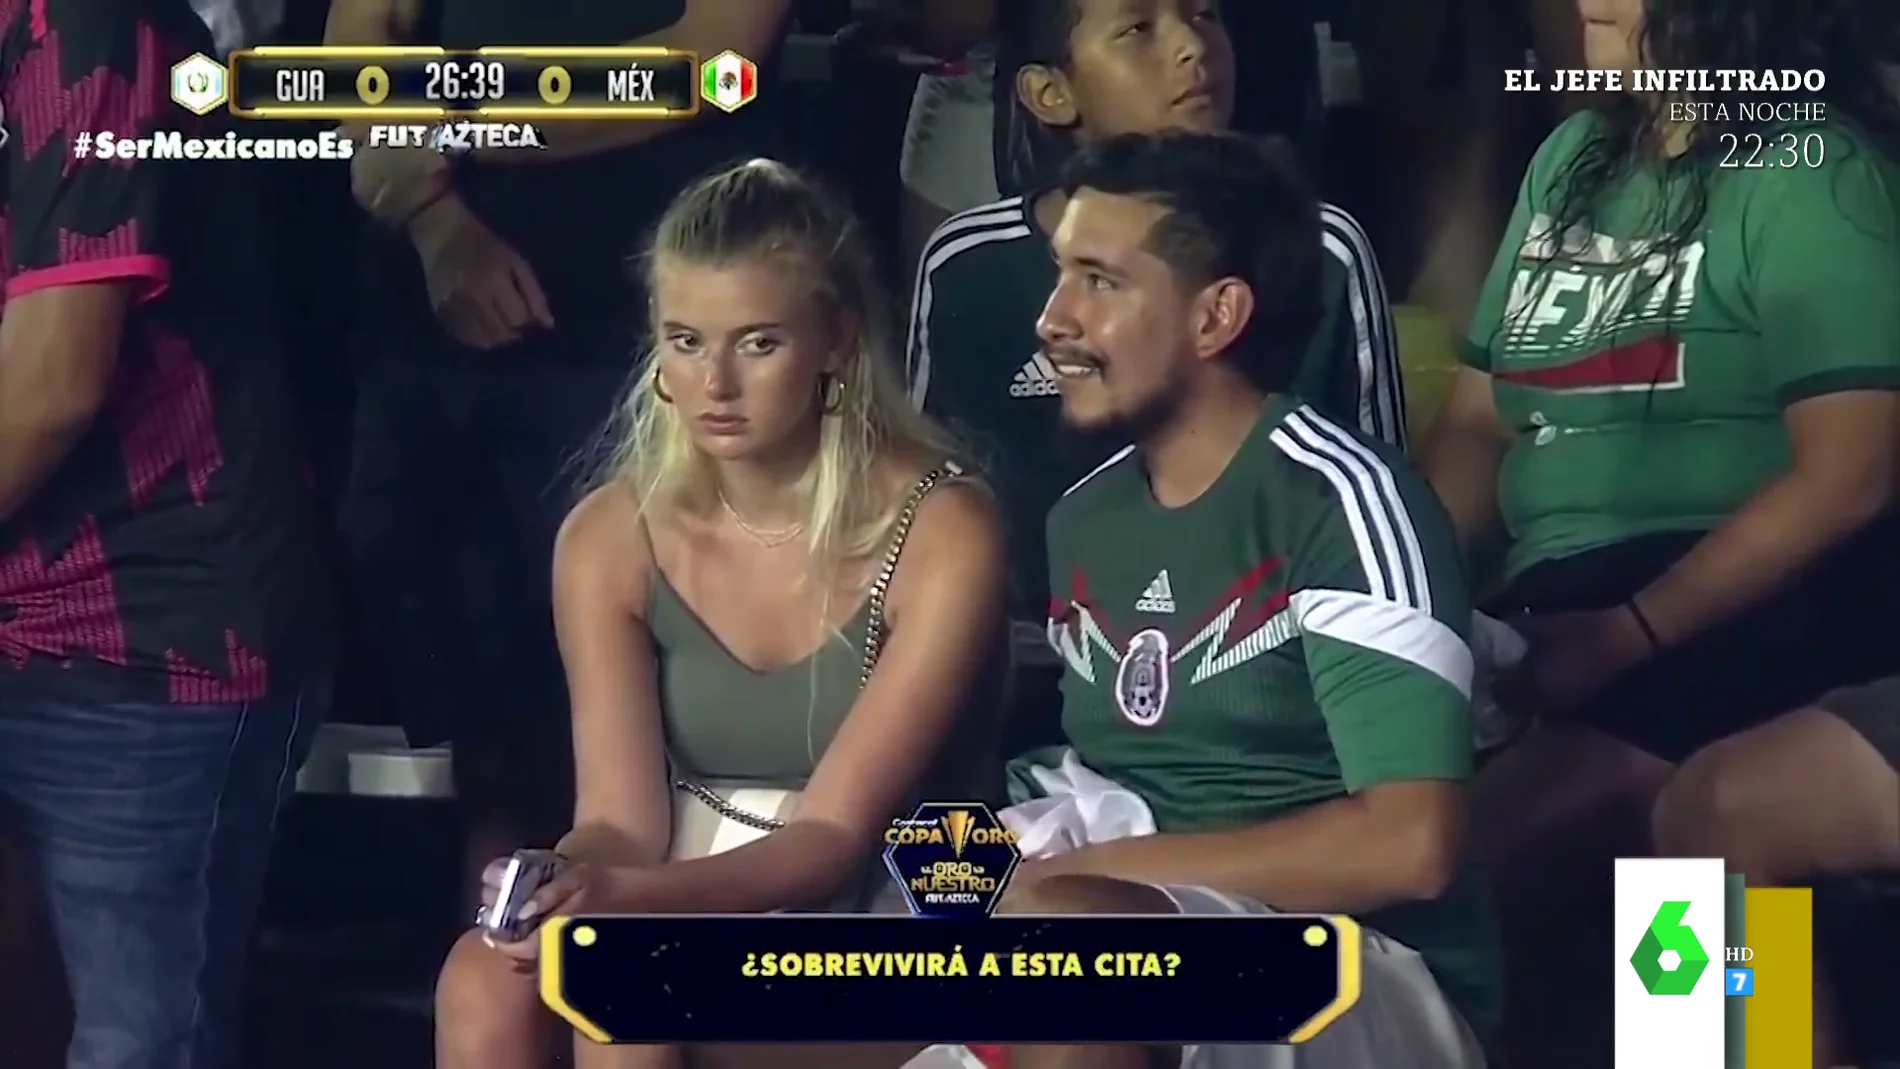 El viral de la cara de aburrimiento de una joven en una cita con su novio en pleno partido de Guatemala y México